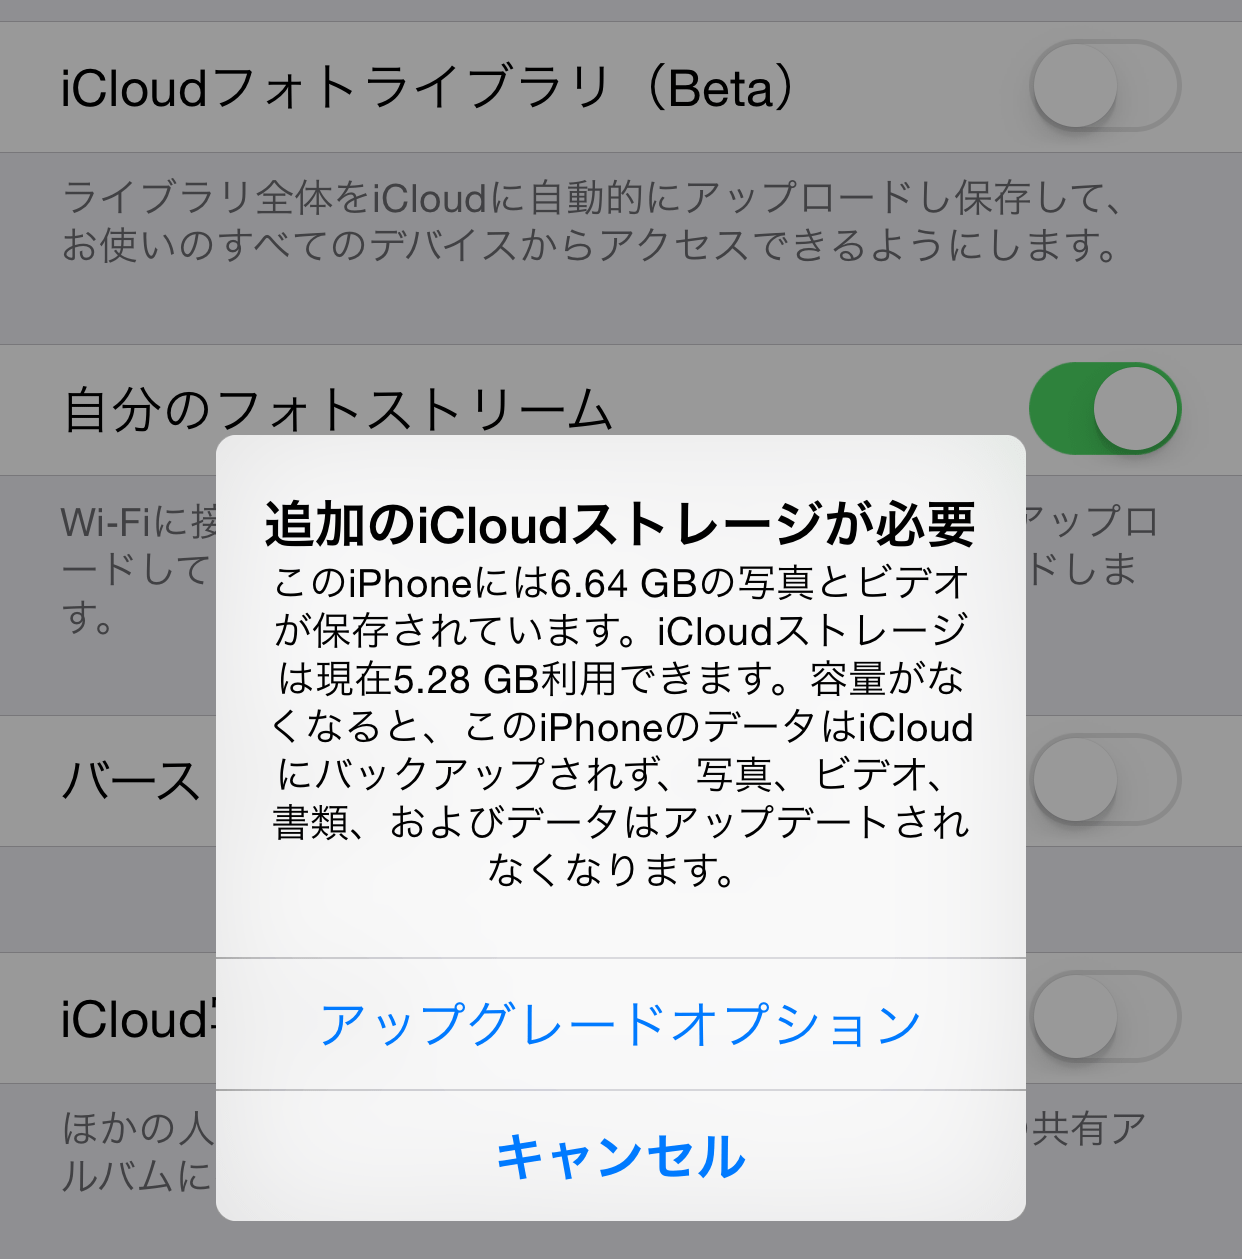 IOS8 1 update 02